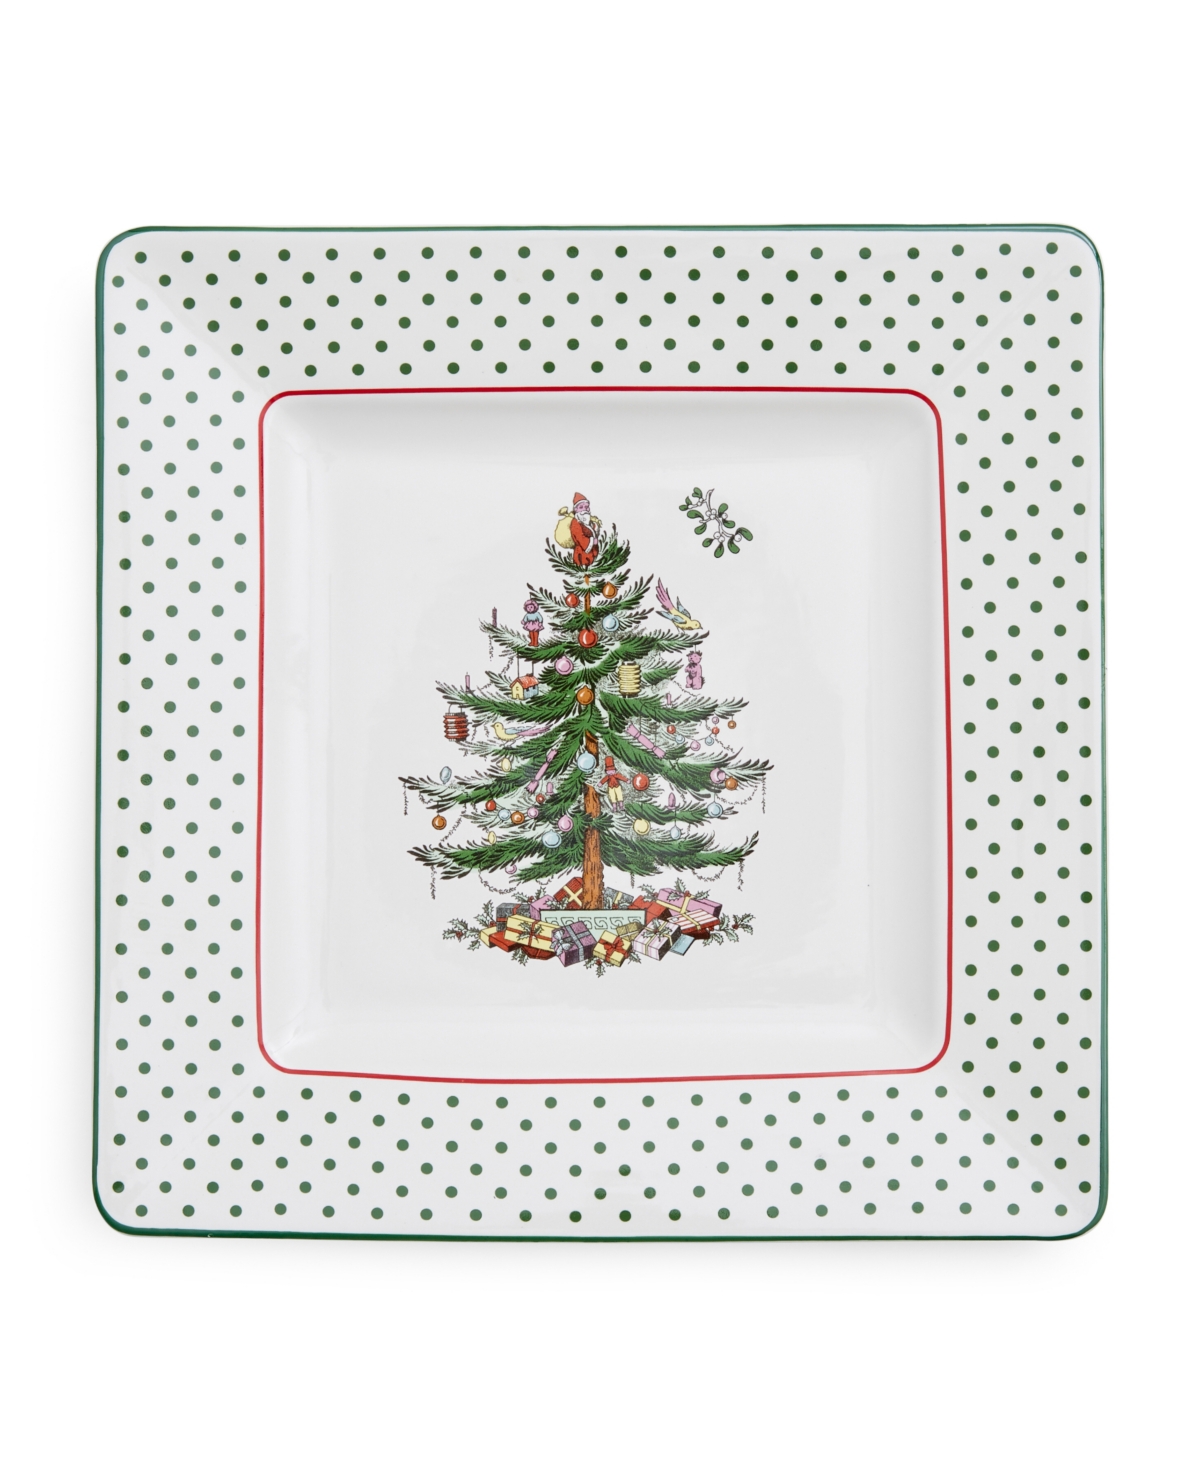 Spode Christmas Tree Polka Dot Square Platter, 10" L In Green